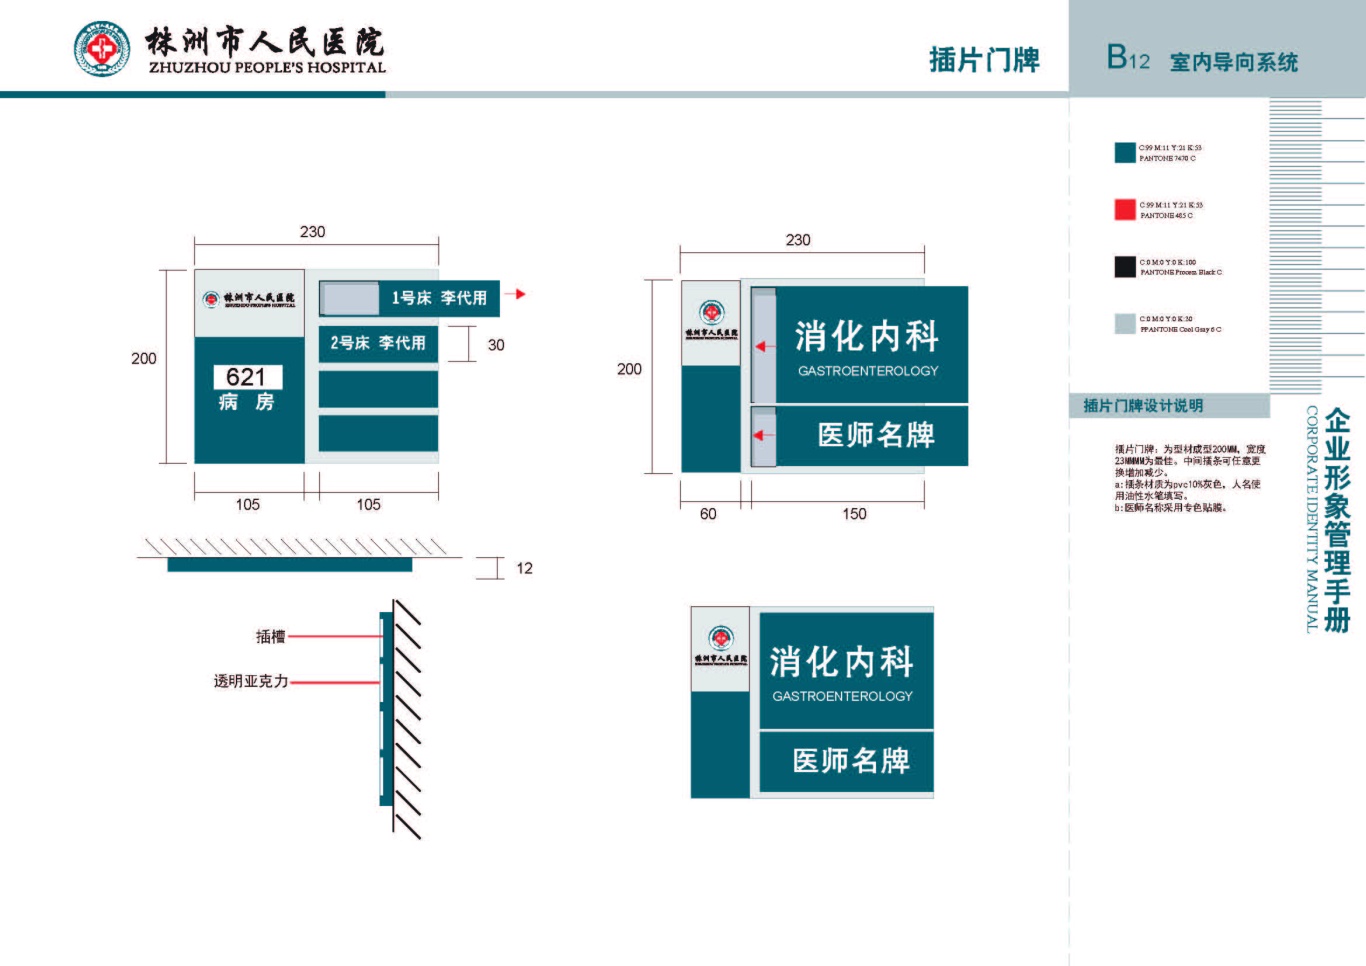 株洲市人民医院vis手册设计项目图20